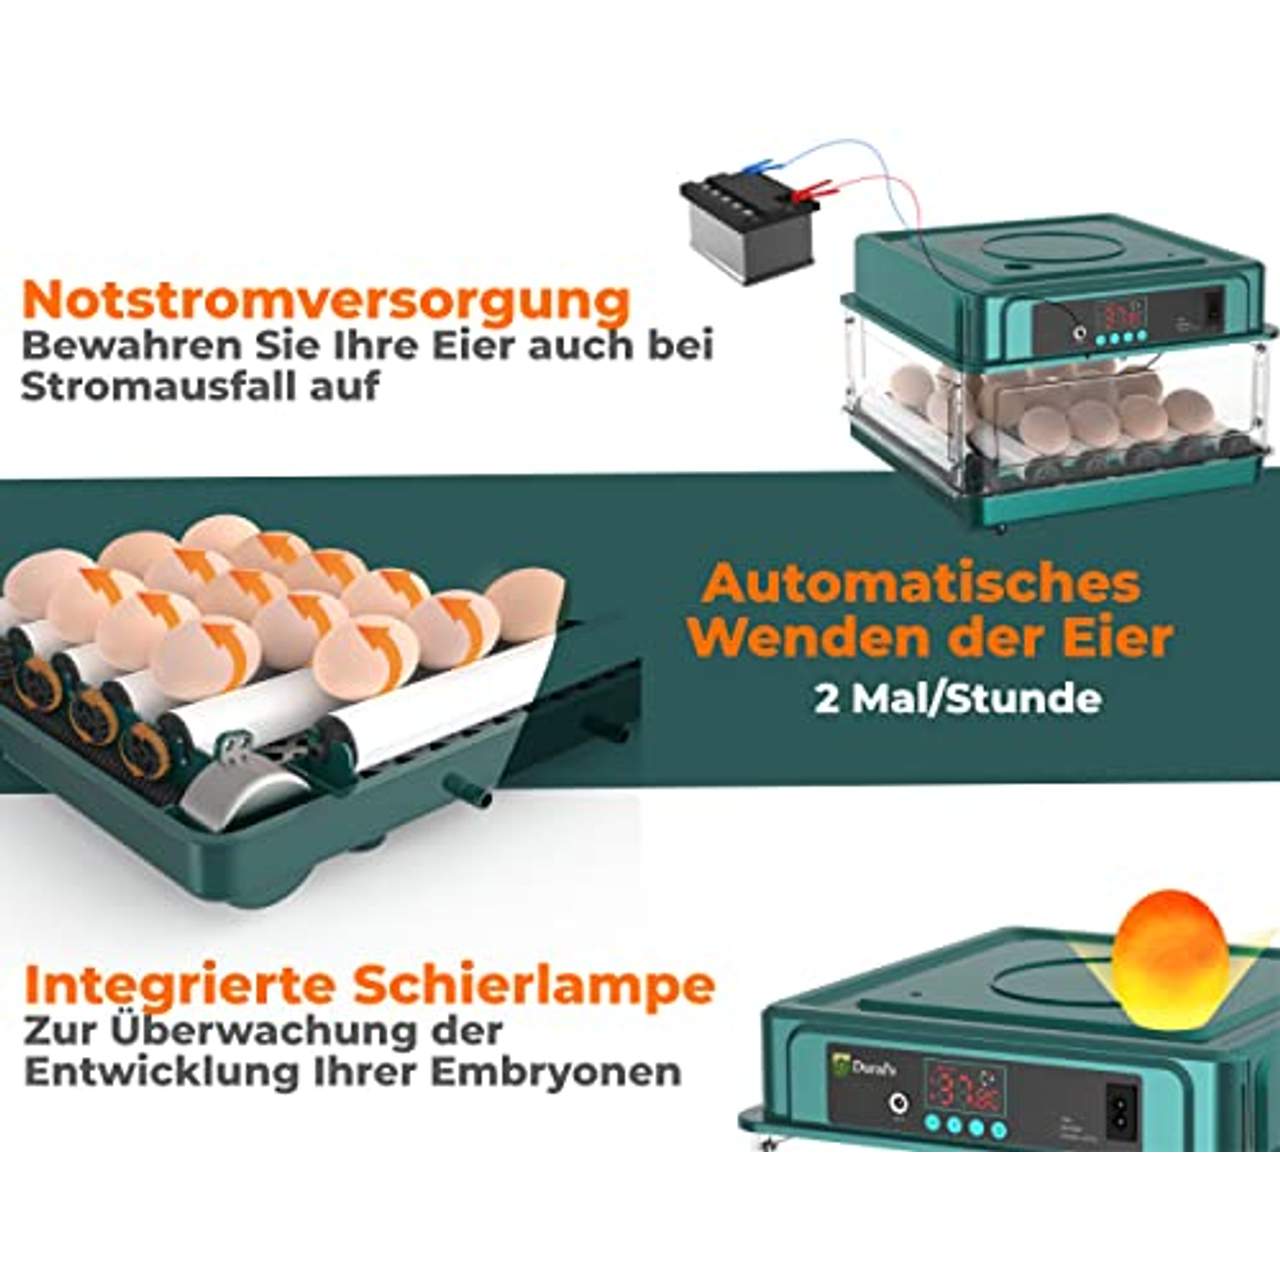 Dural's Brutmaschine Vollautomatisch Automatischer Temperatur und Wende-Eierbrutkasten